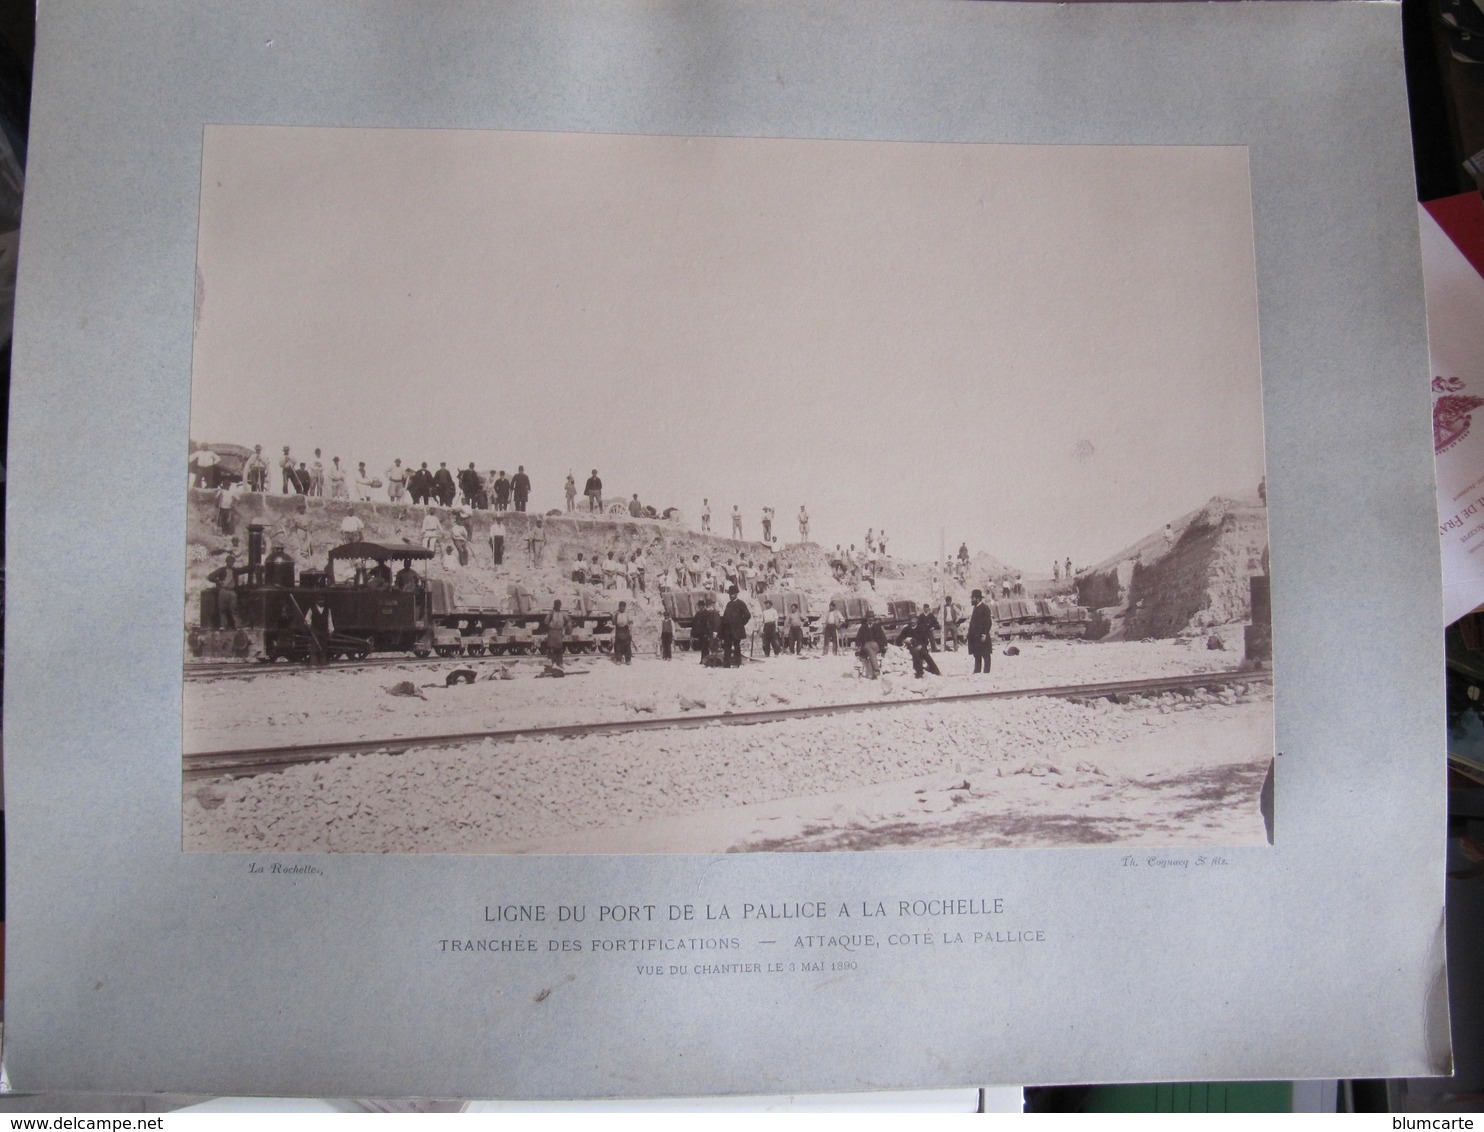 Grande Photo - COGNACQ & FILS - LIGNE DU PORT DE LA PALLICE A LA ROCHELLE - 3 Mai 1890 - COTE LA PALLICE - Lieux